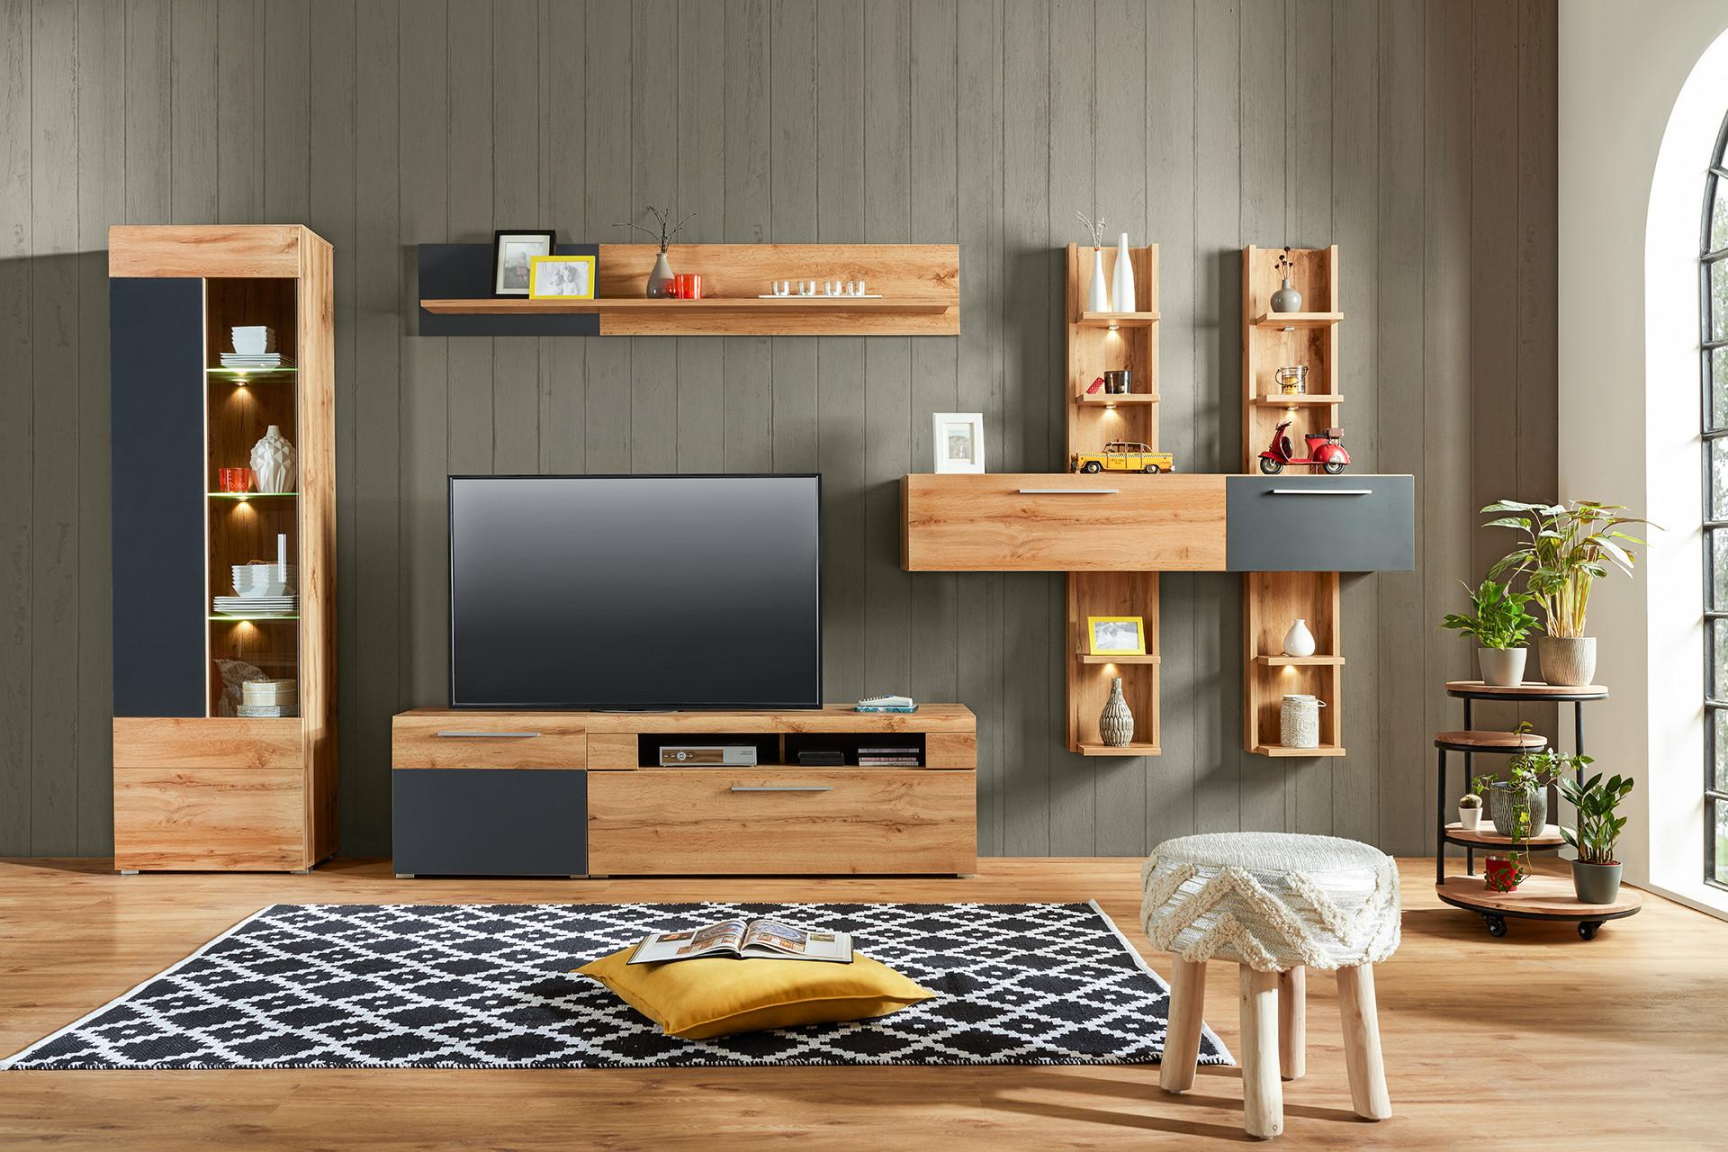 Wohnzimmermöbel aus Holz: Natur pur  Wohnzimmer-Holzmöbel  mömax